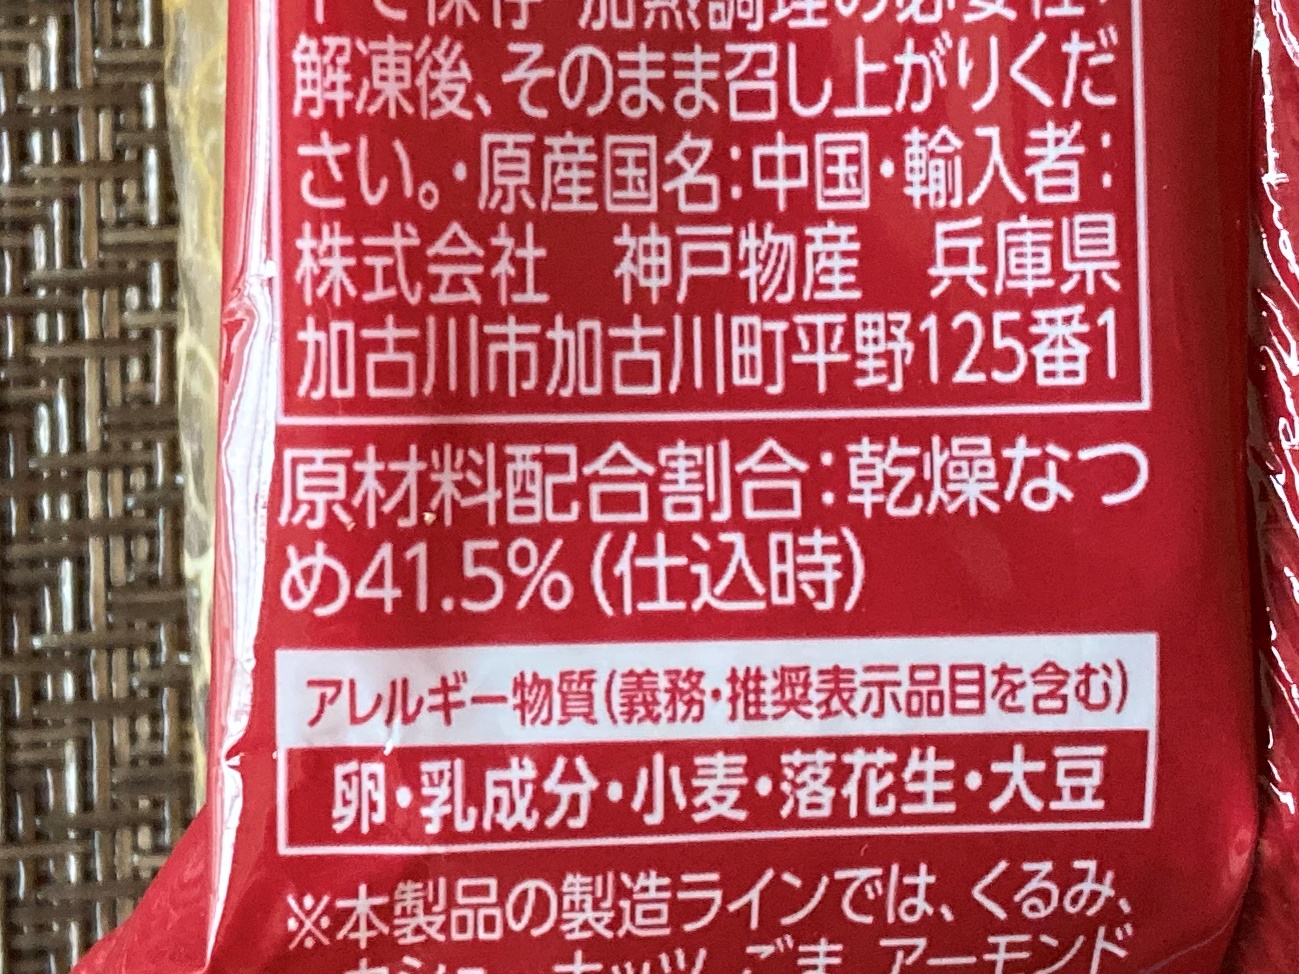 業務スーパーの棗月餅パッケージにあるなつめ配合割合41.5％の表記